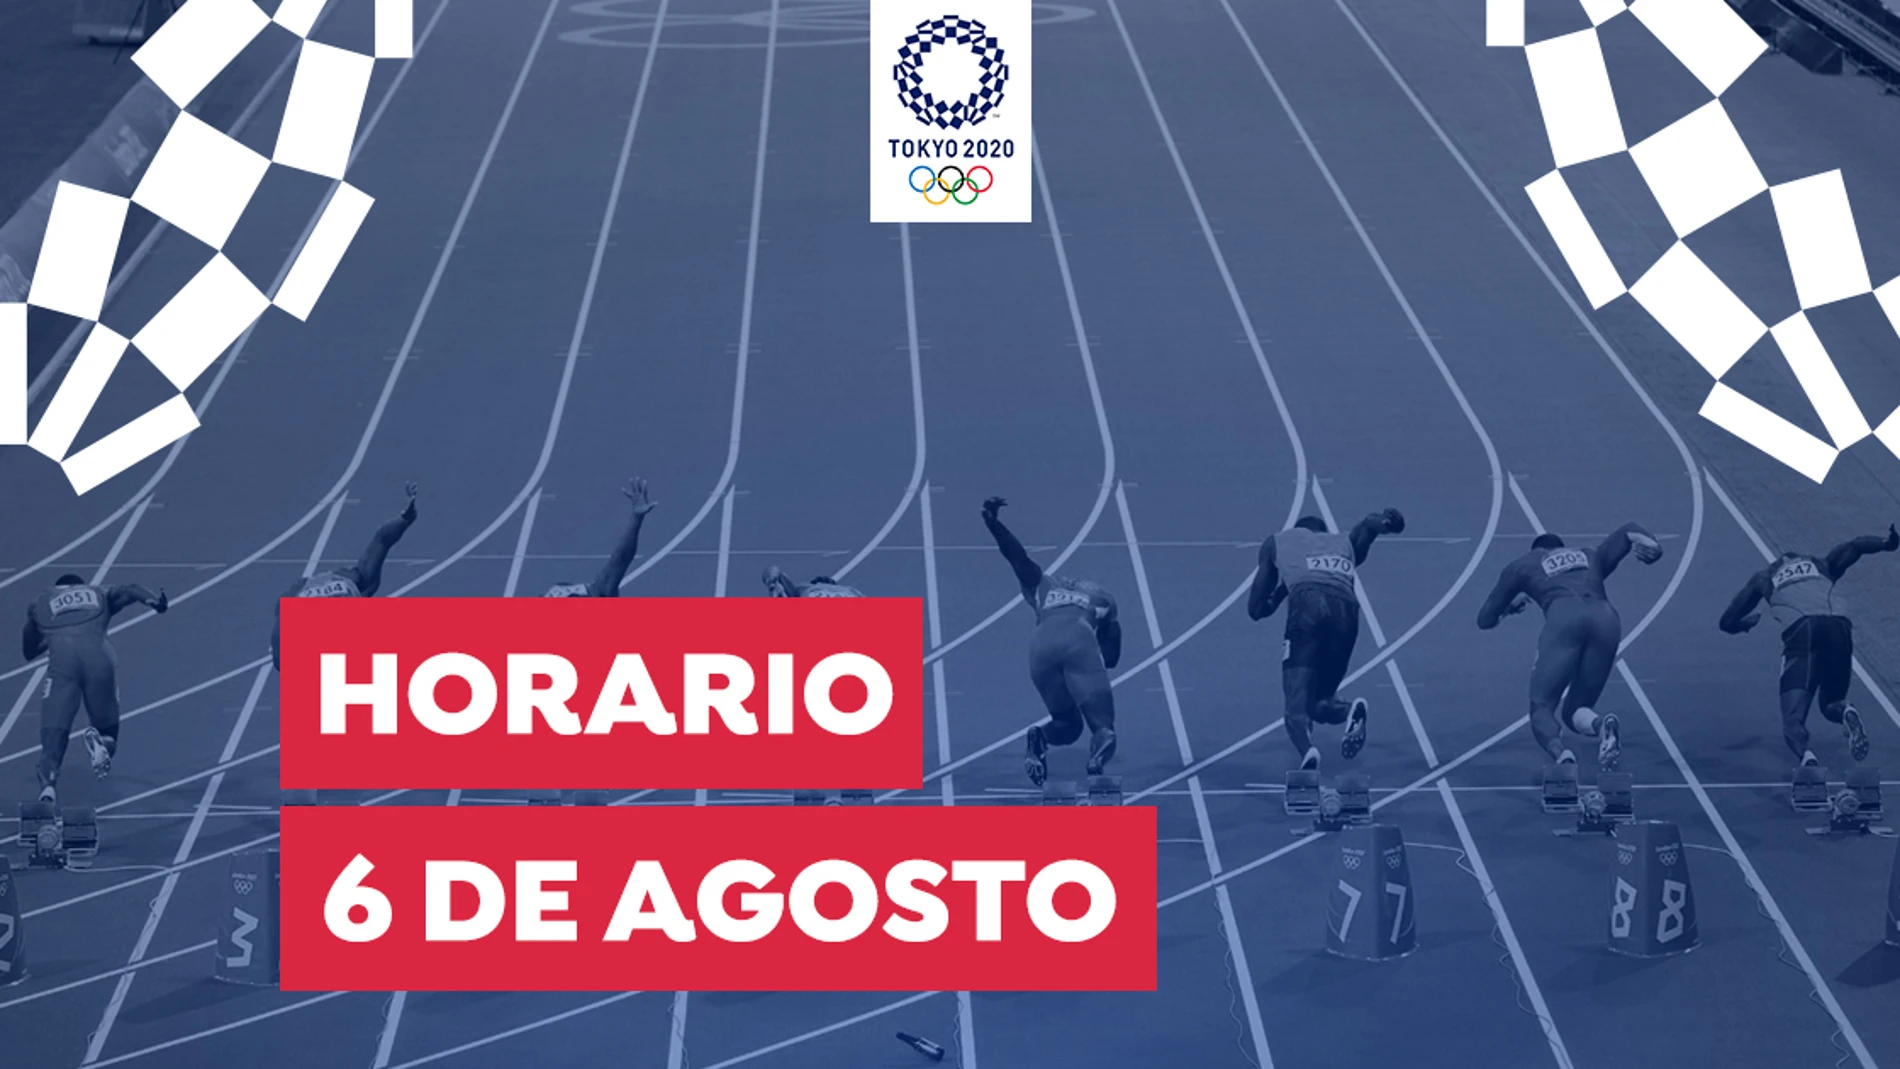 Juegos Olímpicos de Tokio: Horario y dónde ver las competiciones de España del viernes 6 de agosto